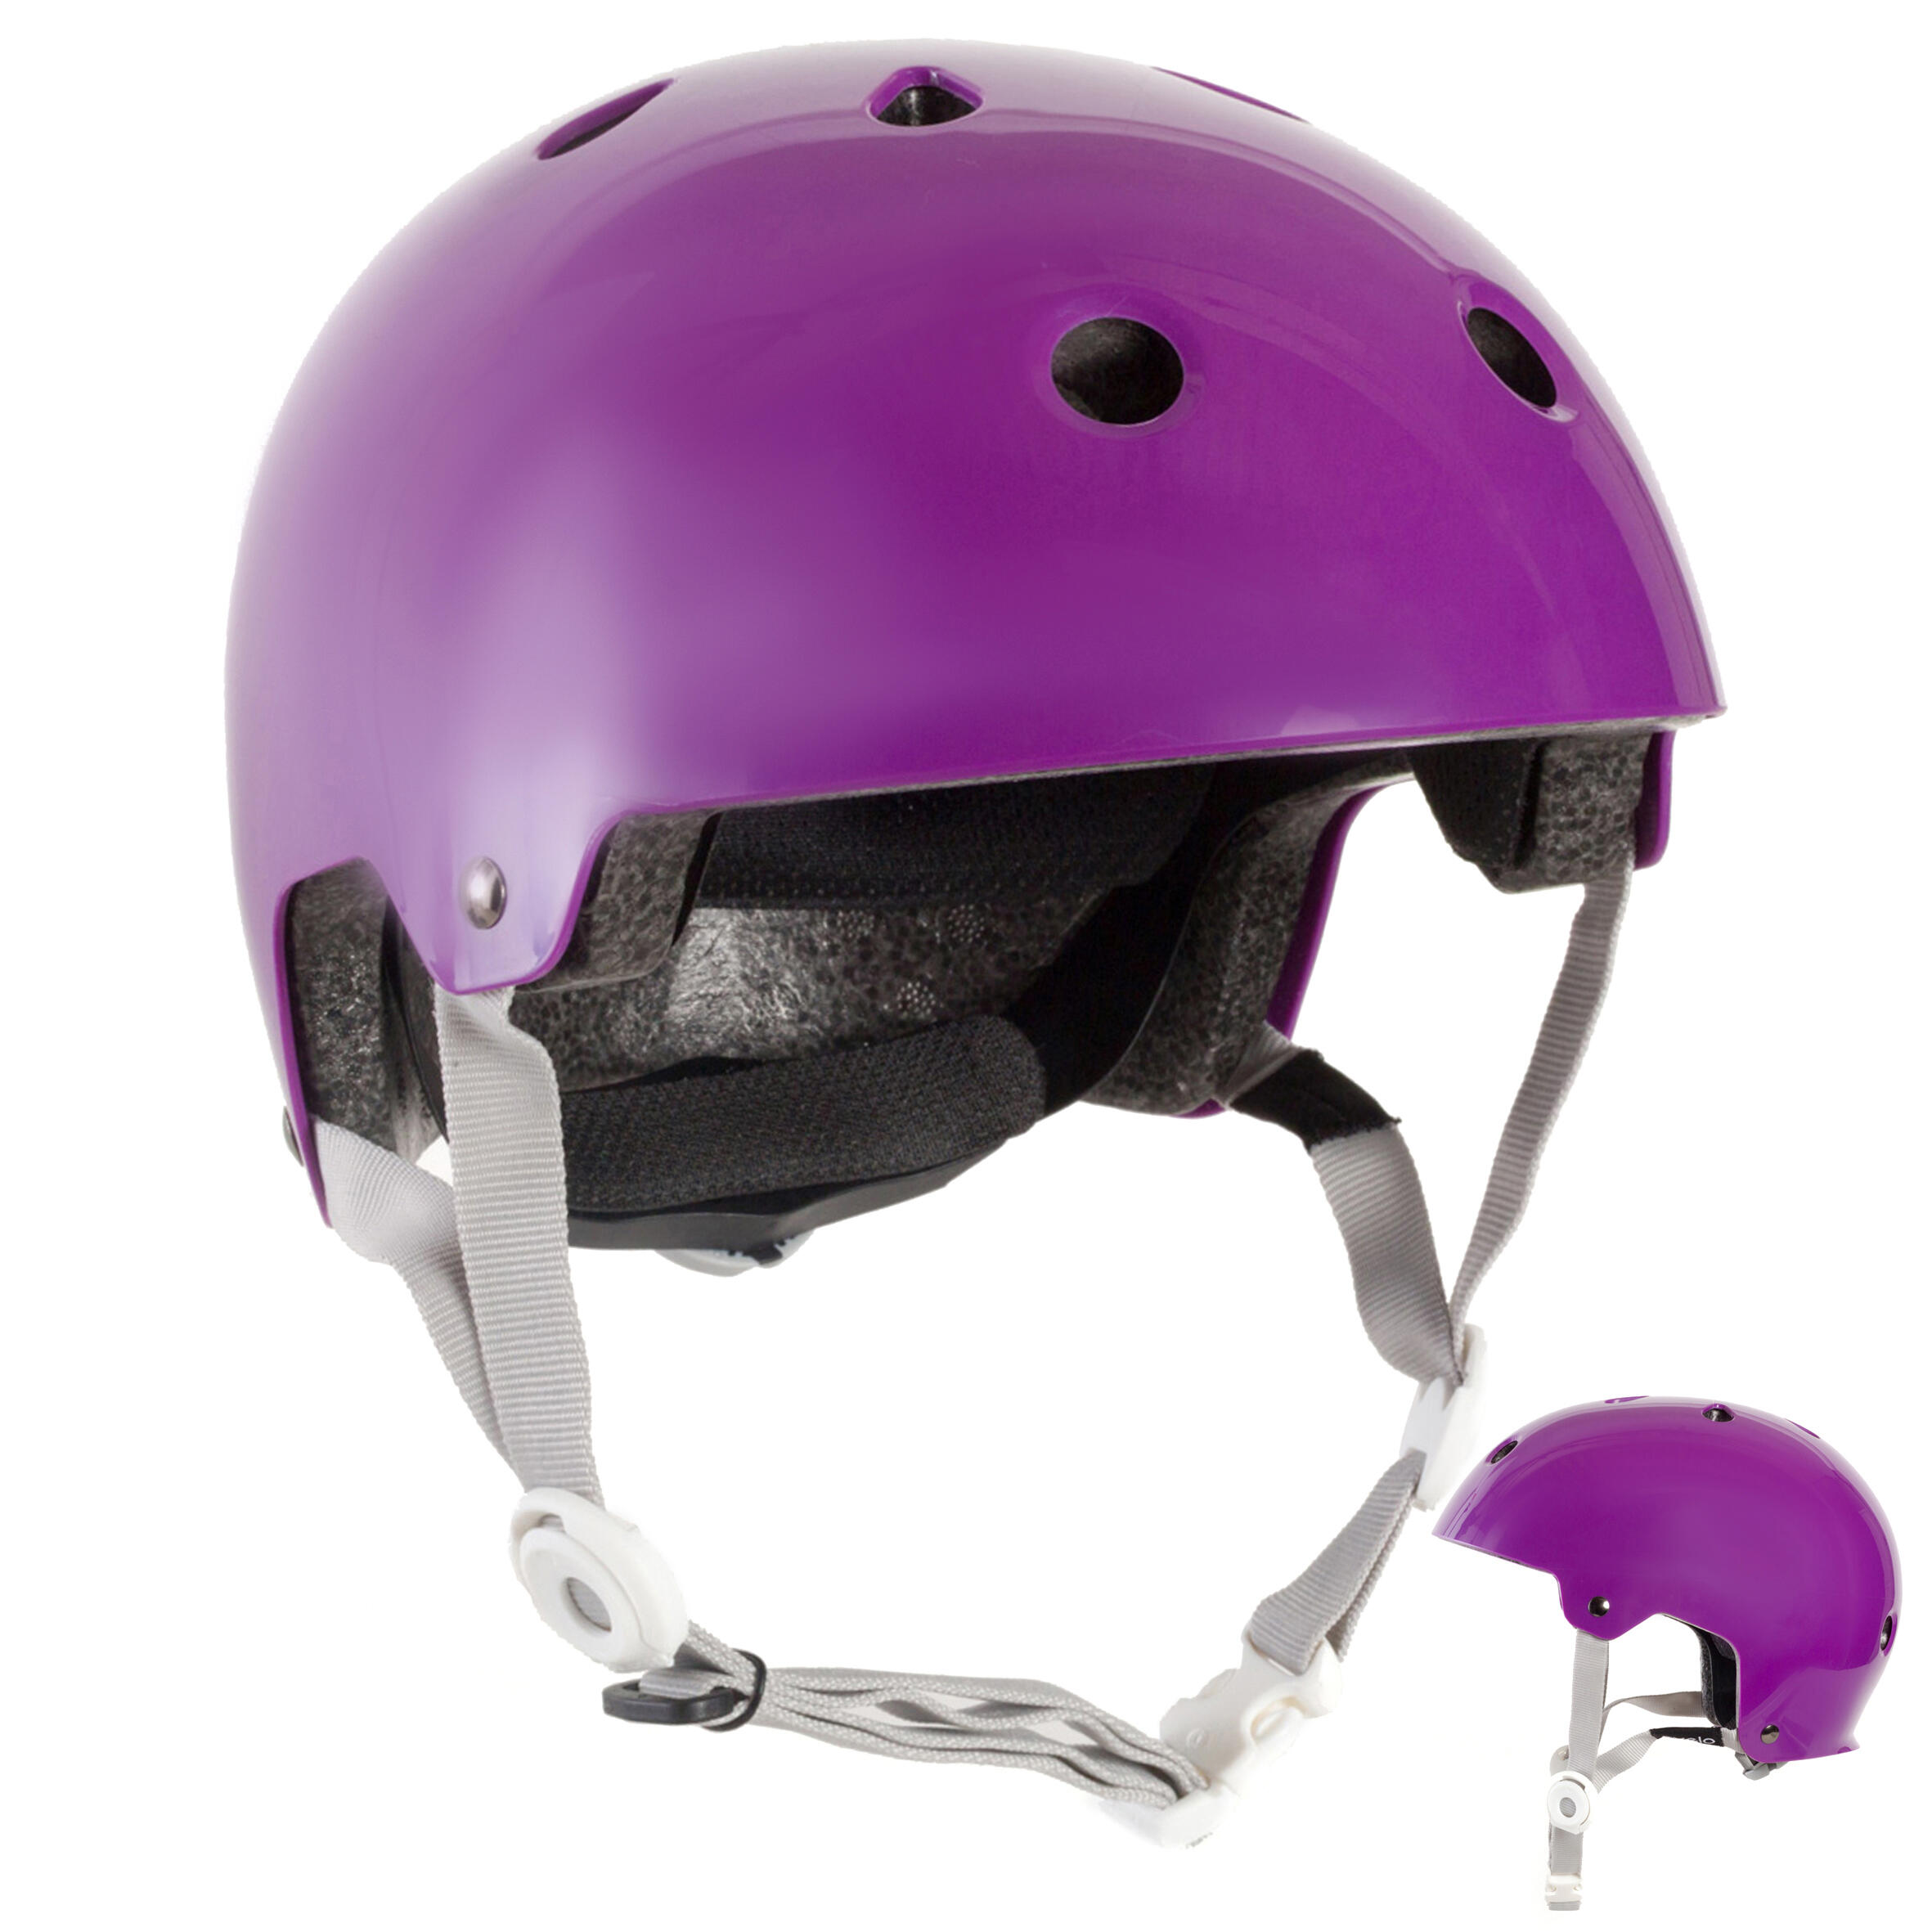 decathlon scooter helmet